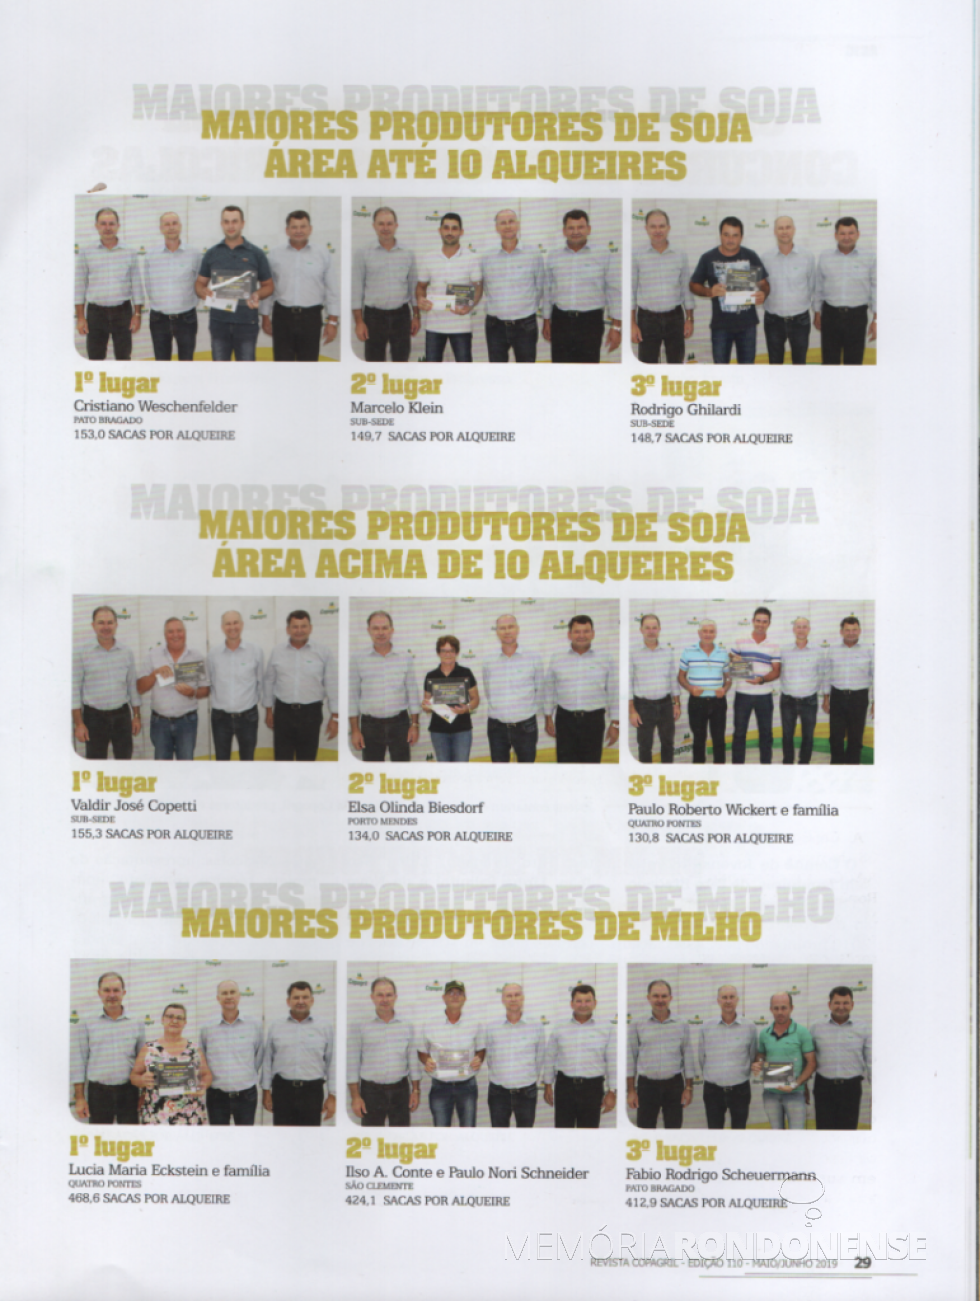 Premiação dos produtores que alcançaram a melhor produtividade de soja e milho, respectivamente, nas categorias envolvidas, na safra 2018/2019.
ImageM; Revista Copagril nº 110 - FOTO 25 -